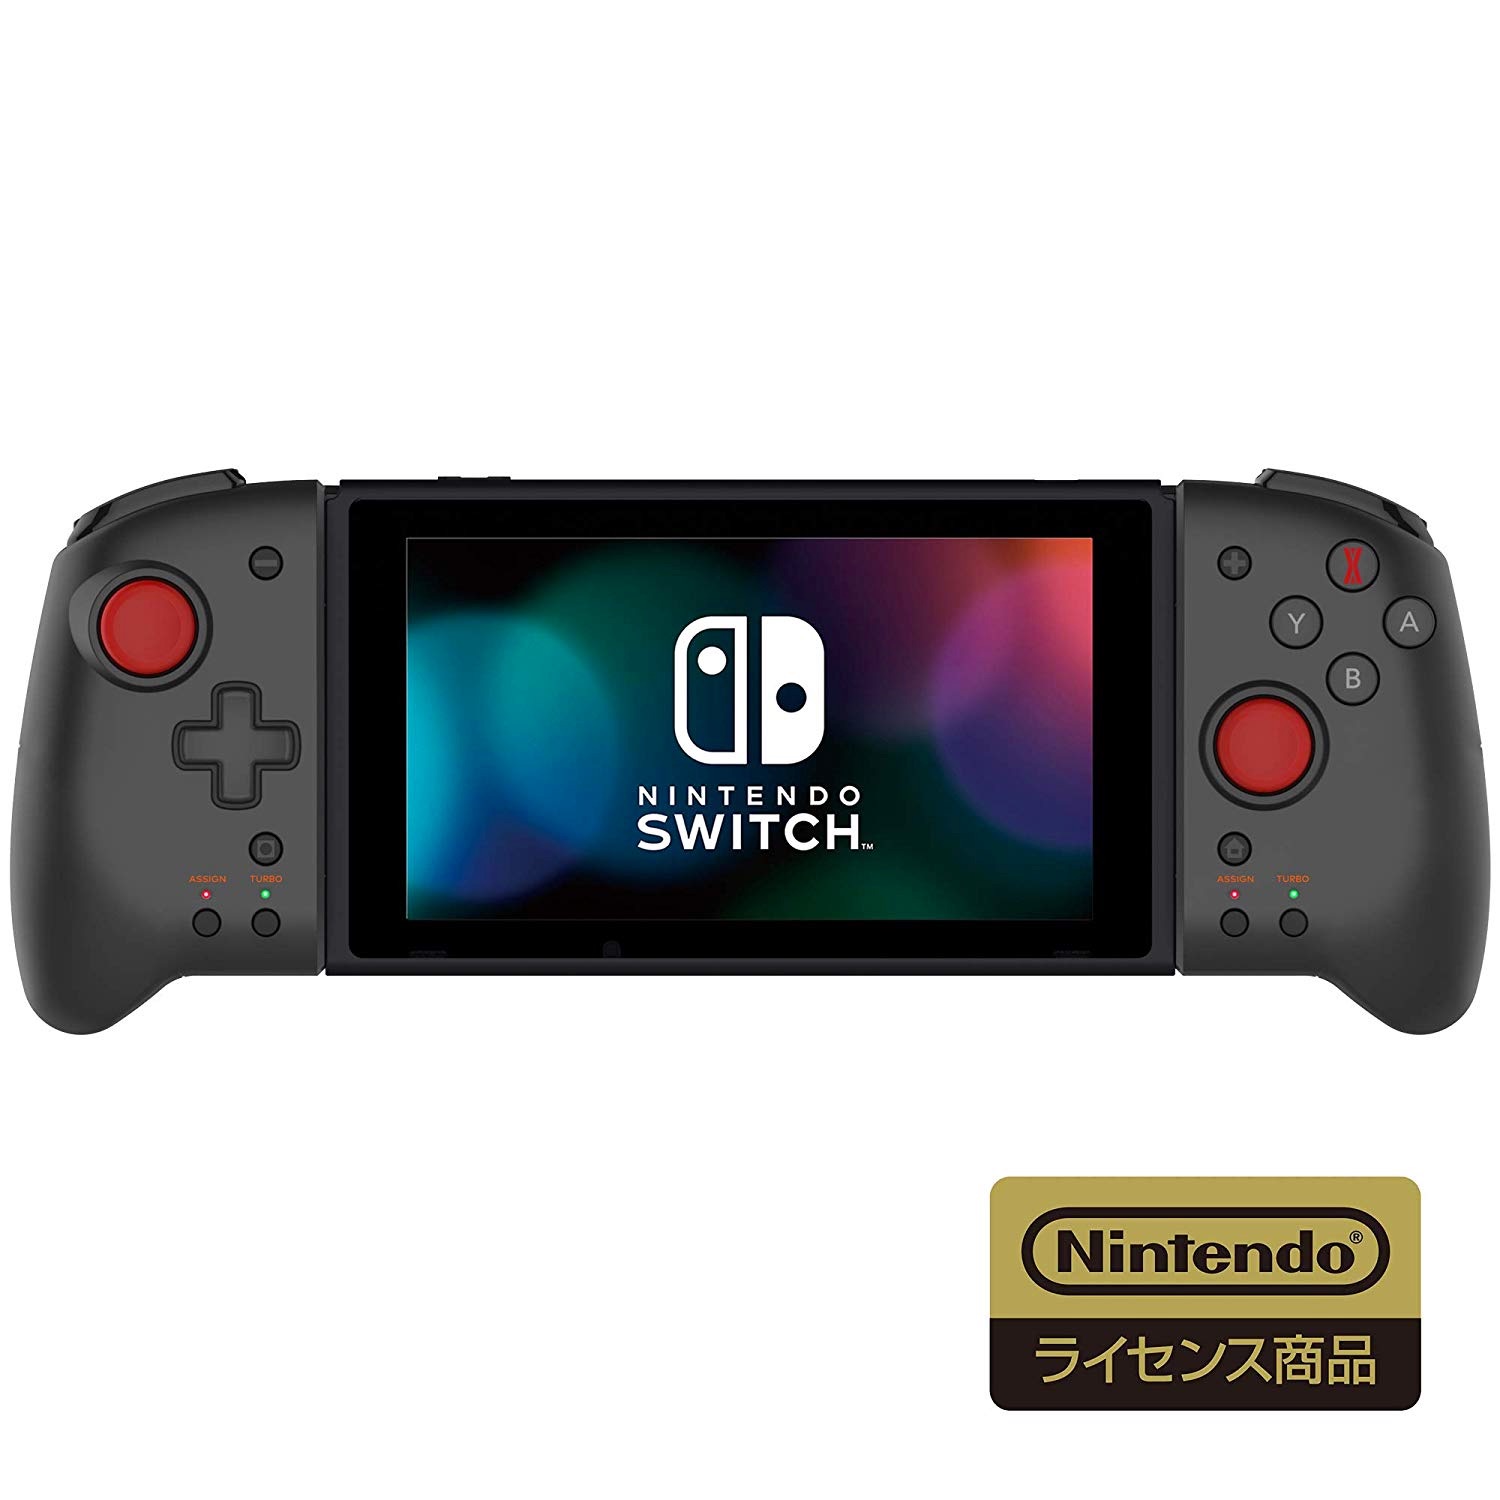 Hori Nintendo Switch用コントローラー 携帯モード専用グリップコントローラー For Nintendo Switch Daemon X Machina 発表 ハジプロ